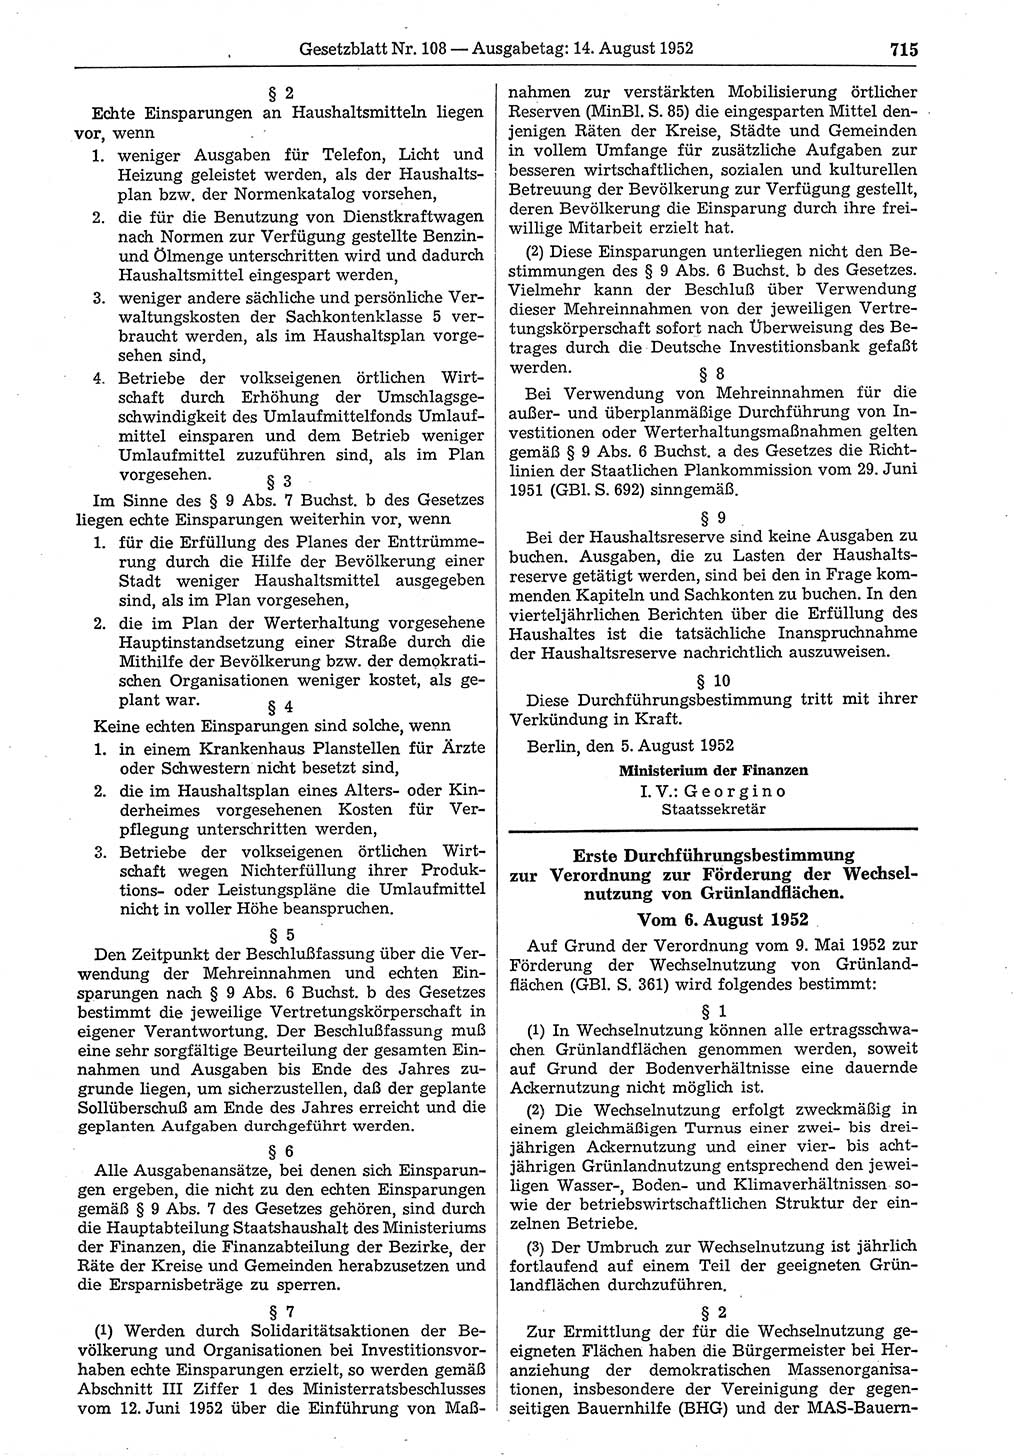 Gesetzblatt (GBl.) der Deutschen Demokratischen Republik (DDR) 1952, Seite 715 (GBl. DDR 1952, S. 715)